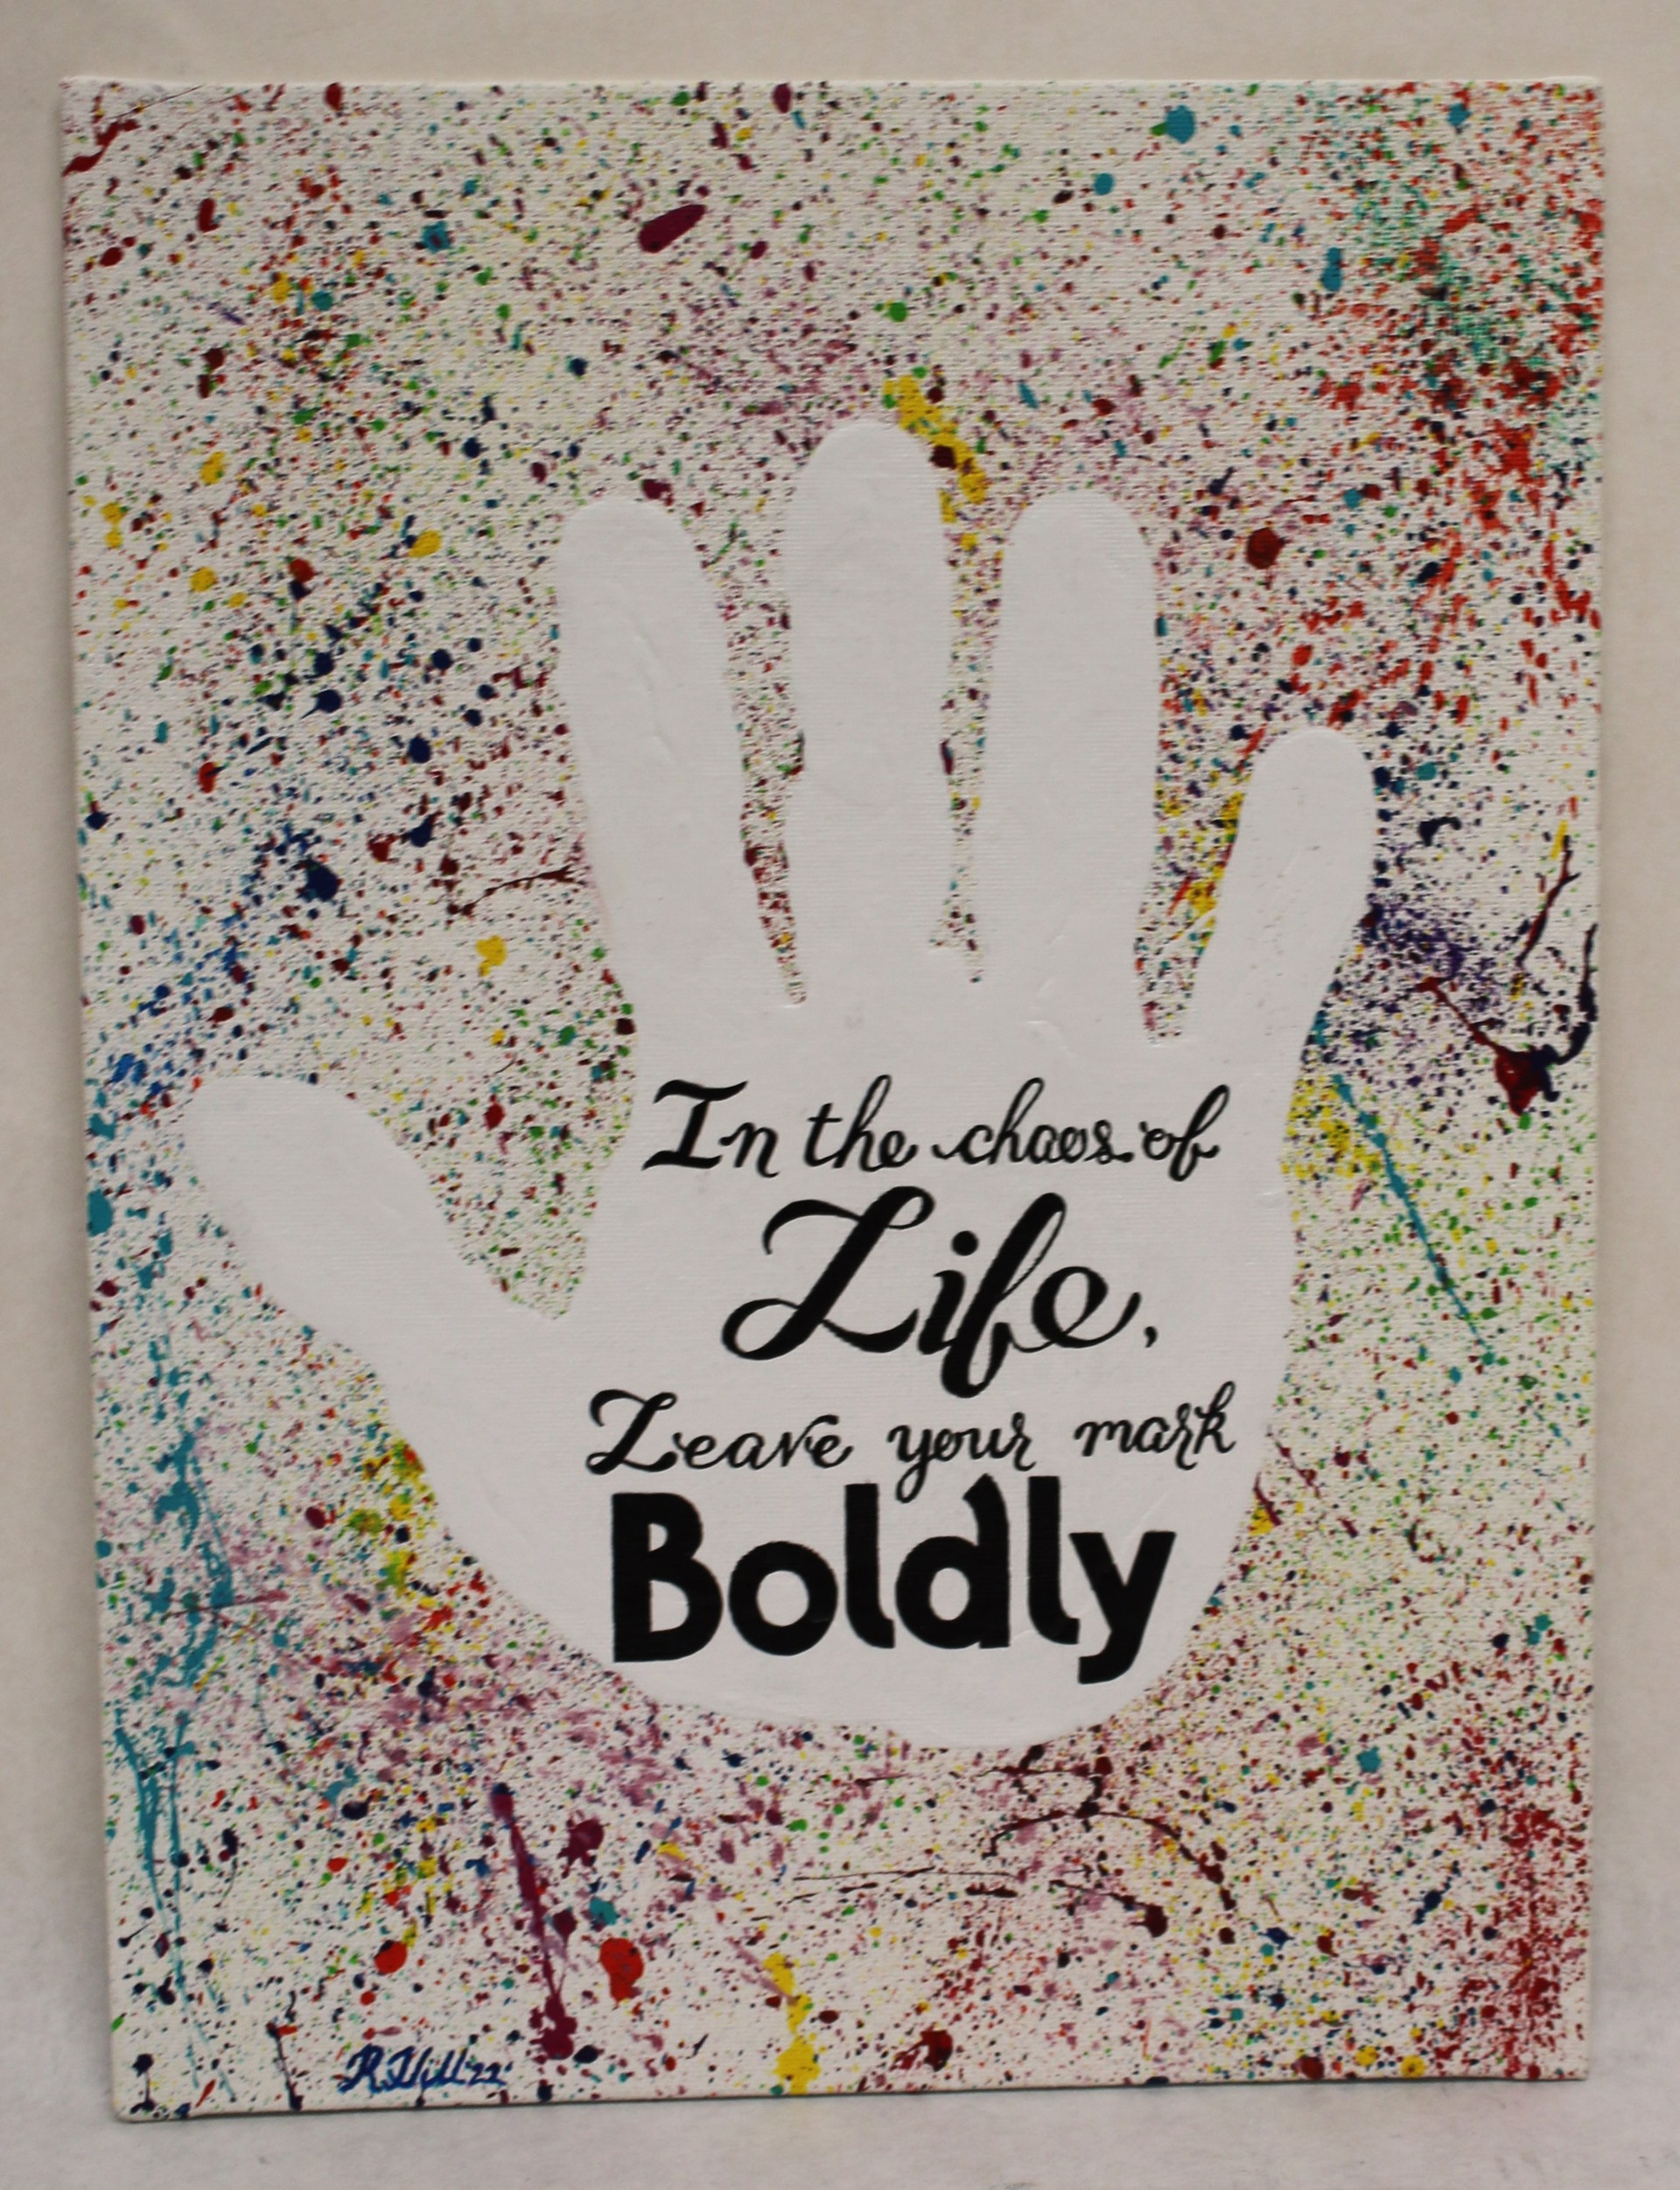 Boldness by Robert E. Hill